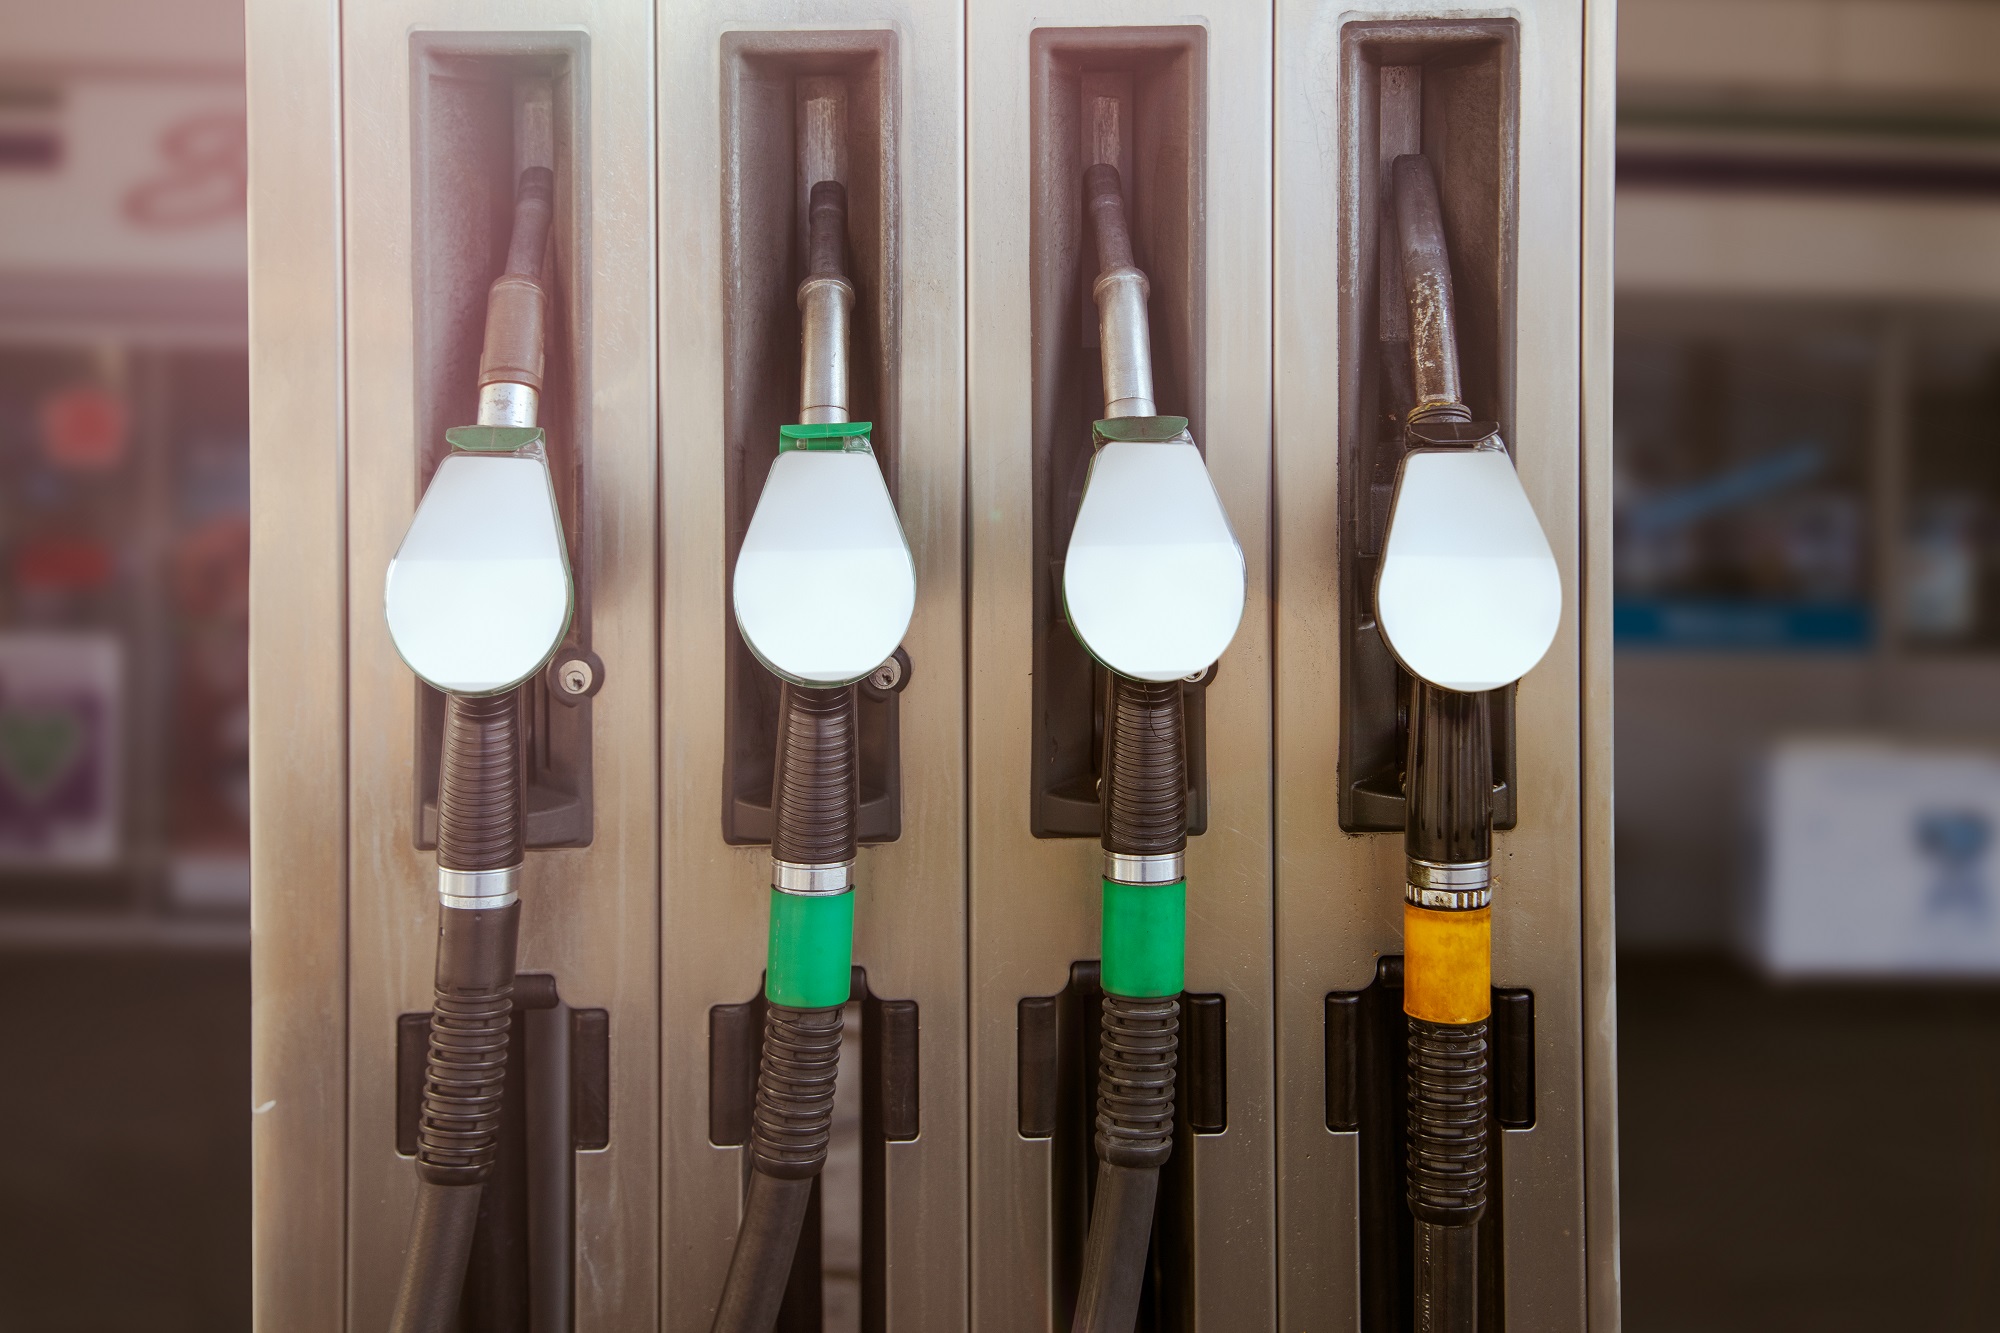 benzyna diesel ceny paliw cena paliwo vat akcyza podatki